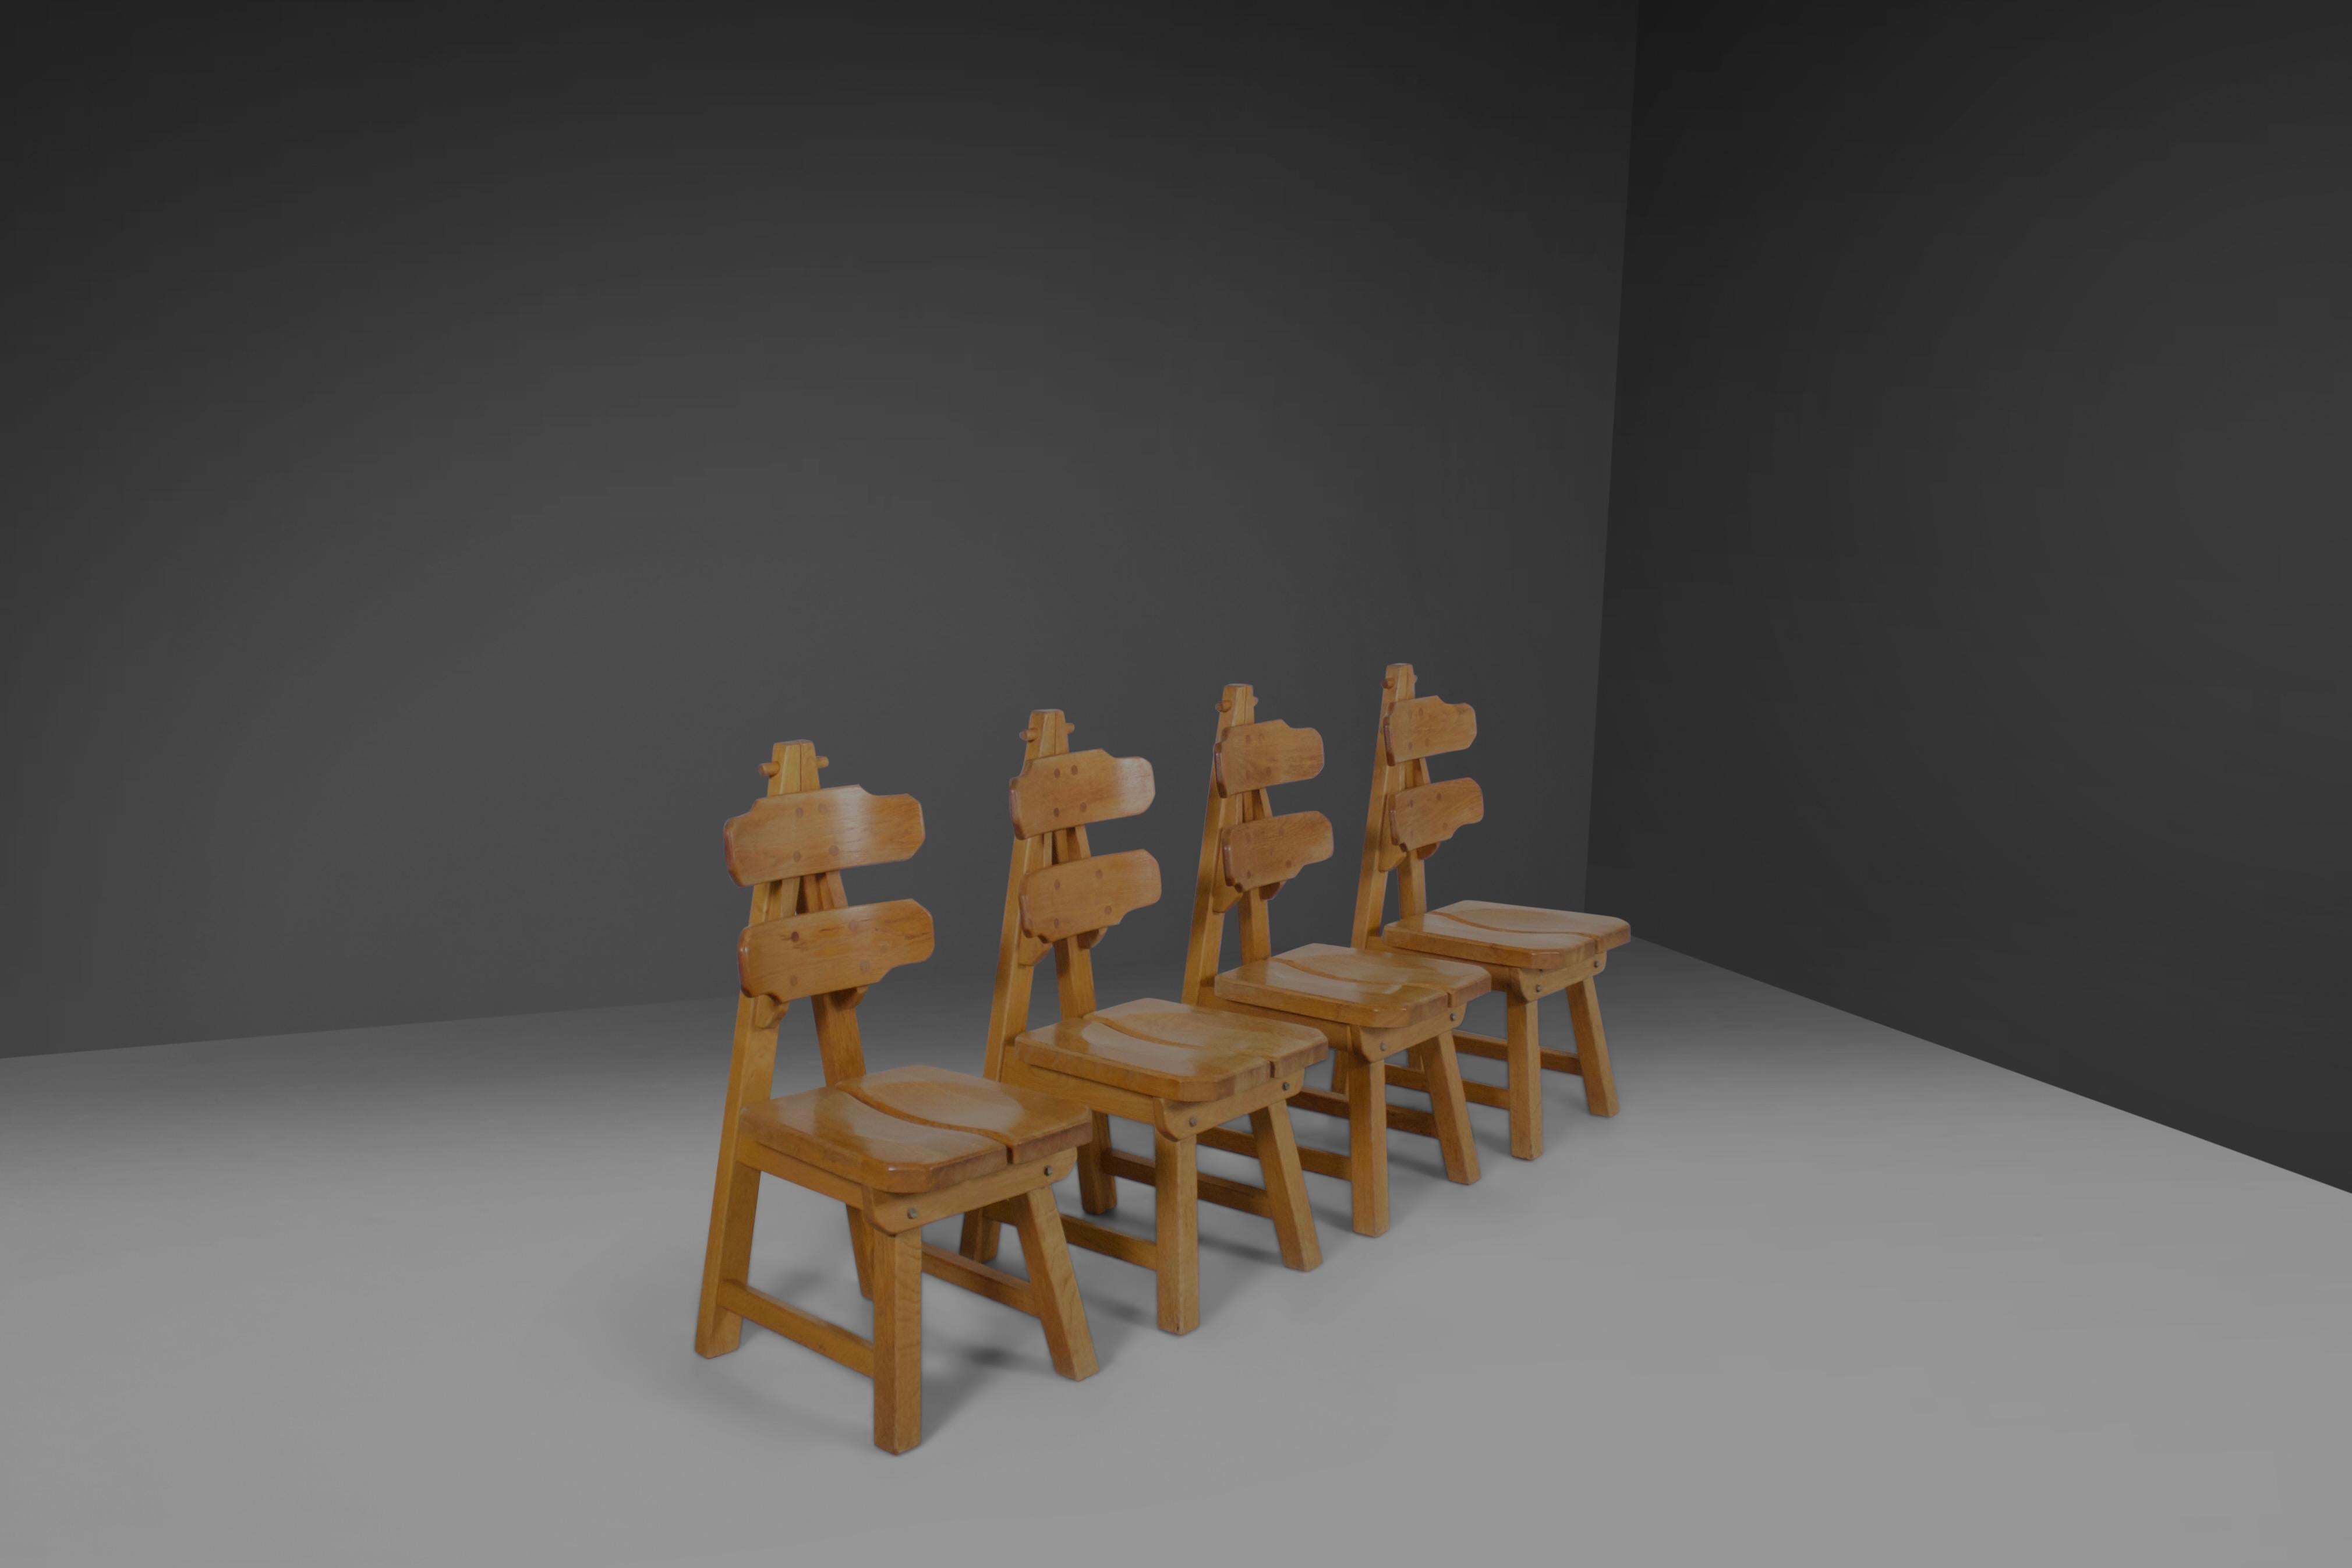 Chaises sculpturales très impressionnantes en très bon état.

Ces chaises ont été fabriquées dans les années 1970 en Espagne.

Ils sont fabriqués en bois de chêne massif et construits avec des joints visibles.

L'assise et le dossier incurvés